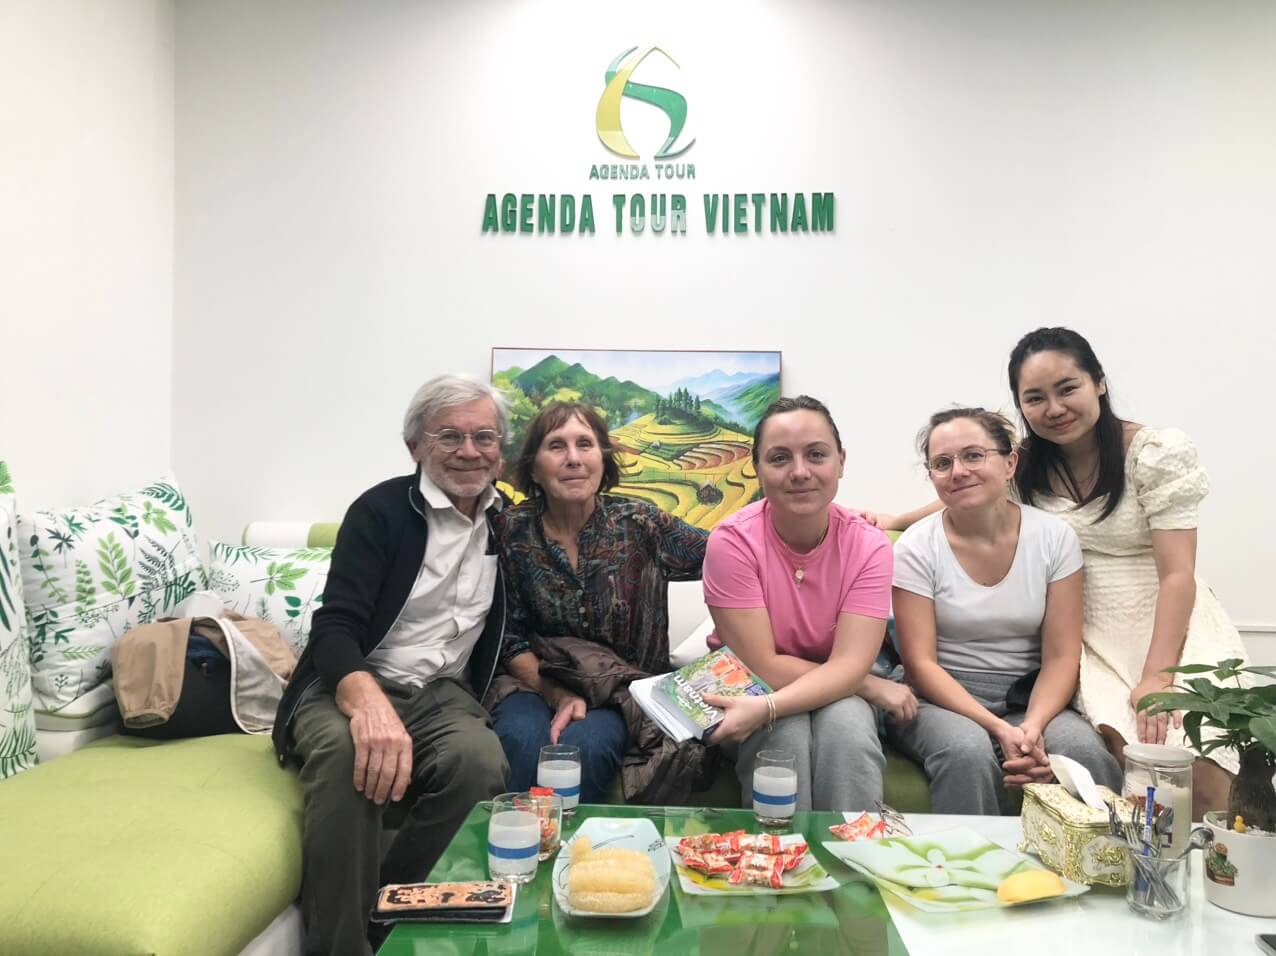 Voyageurs en famille au vietnam avec Agenda Tour